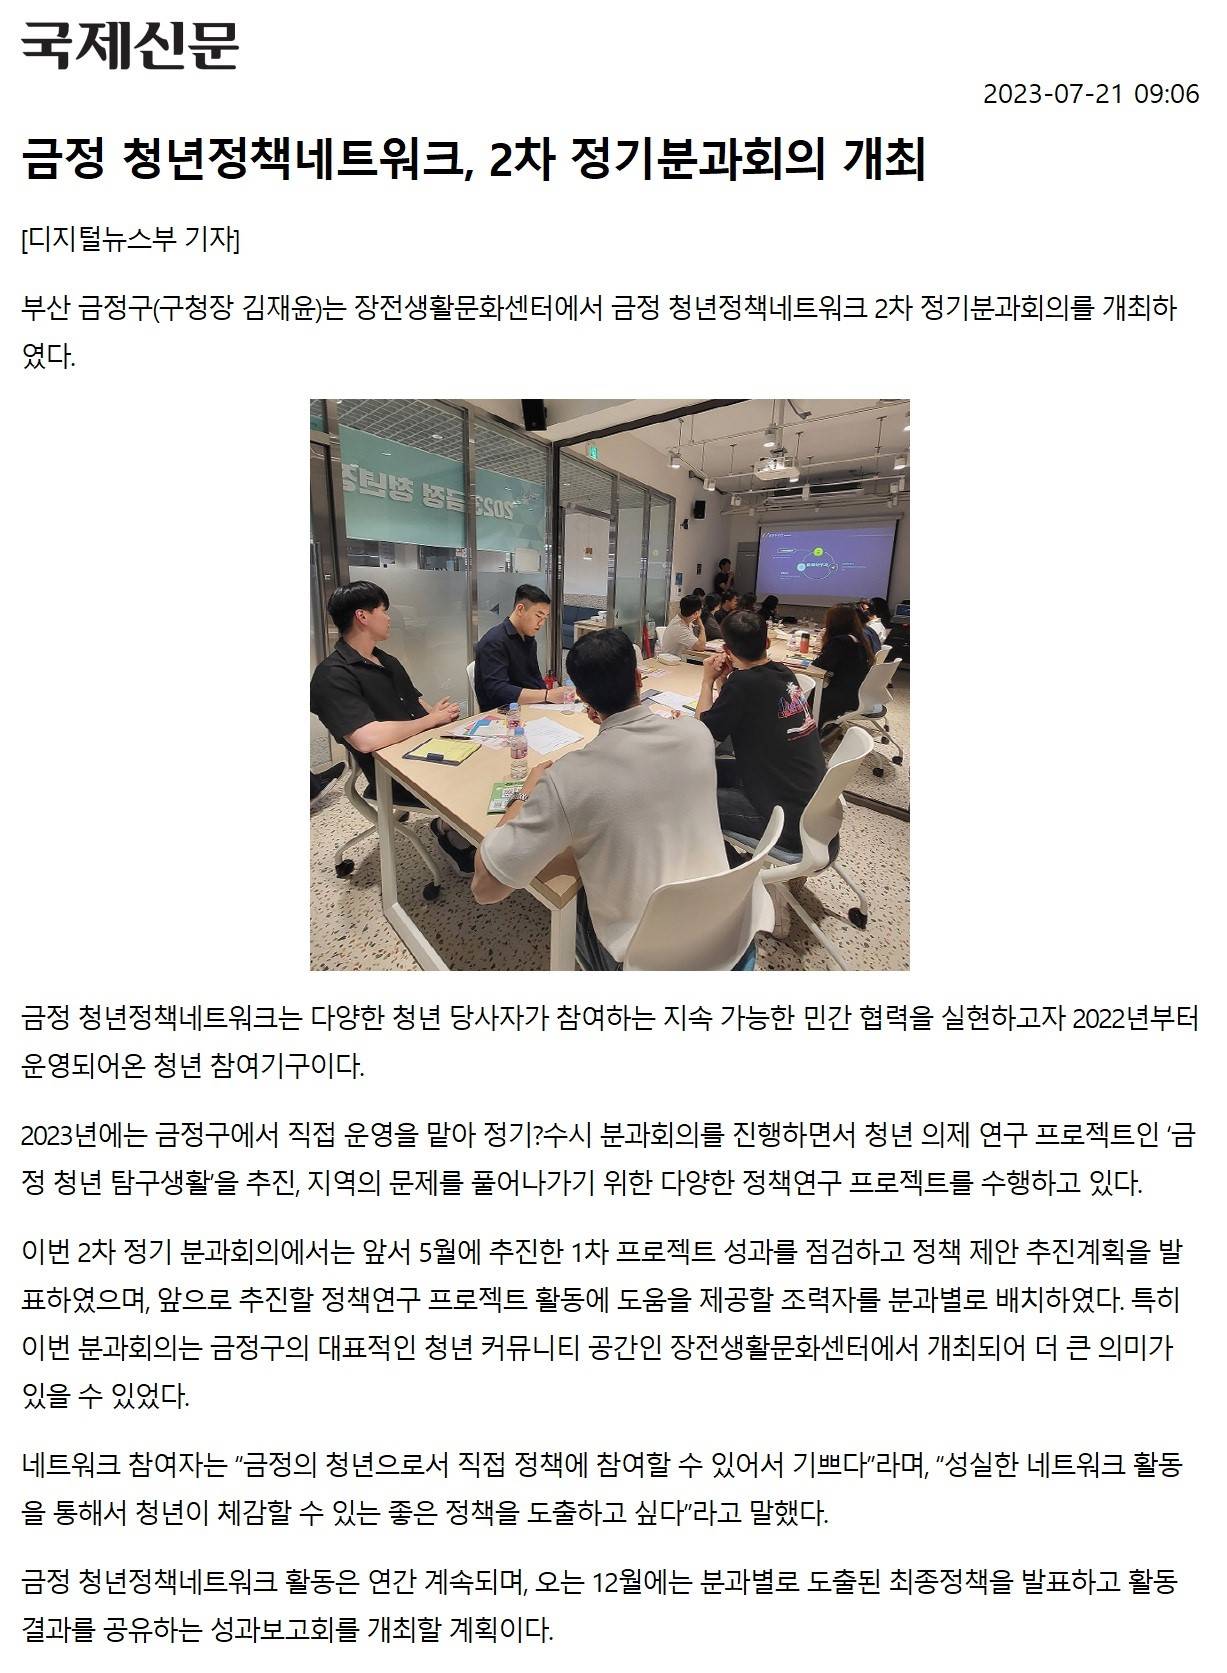 [2023.7.] 금정 청년정책네트워크, 2차 정기분과회의 개최 이미지